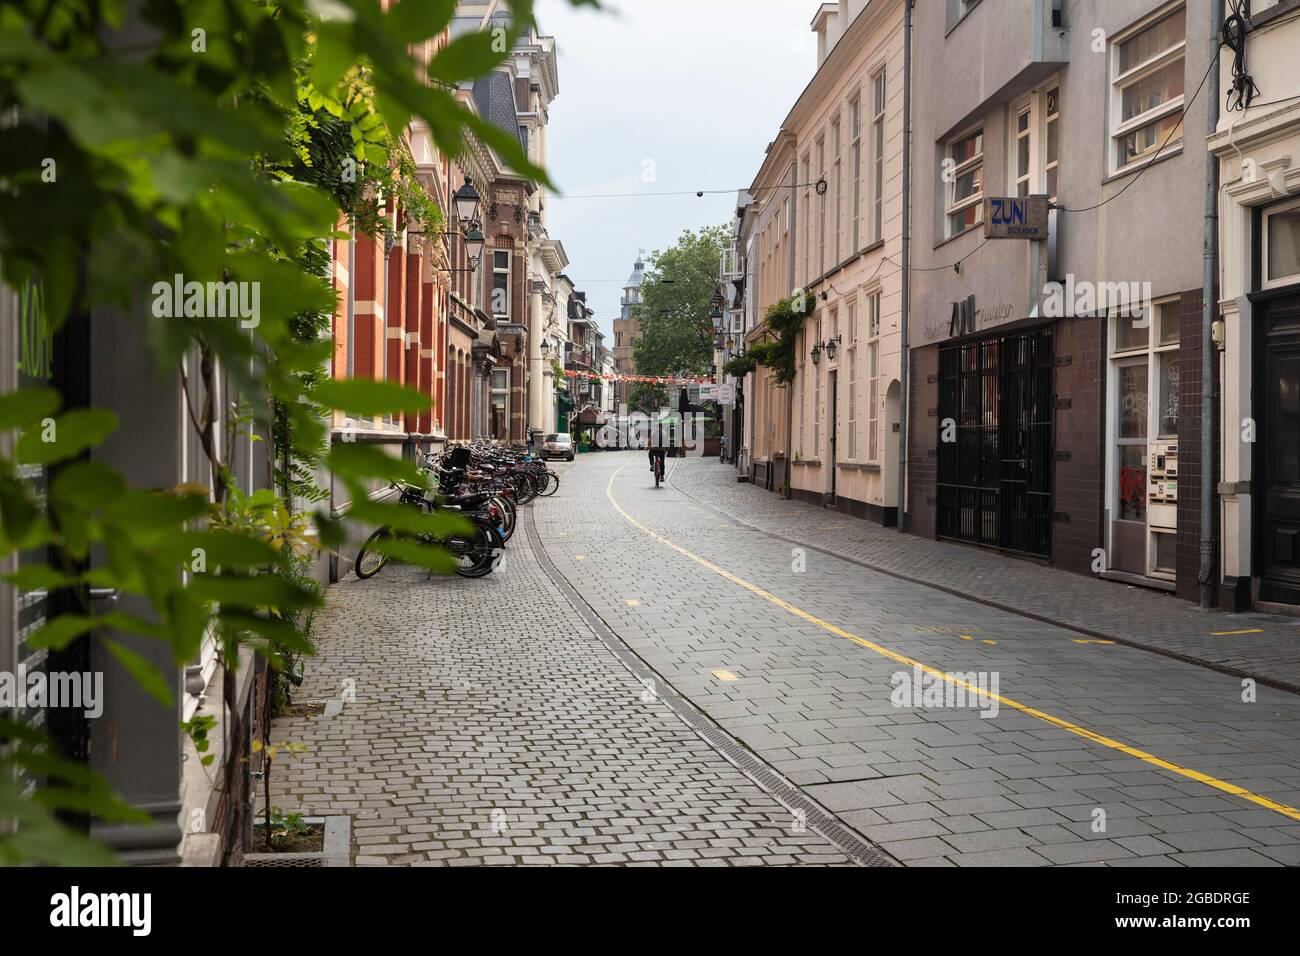 Breda, Niederlande 28. Juni 2021. Straße im Stadtzentrum mit alten historischen Gebäuden, einem Bürgersteig, Geschäften, Häusern, einem Radfahrer, Geparkte Fahrräder Stockfoto